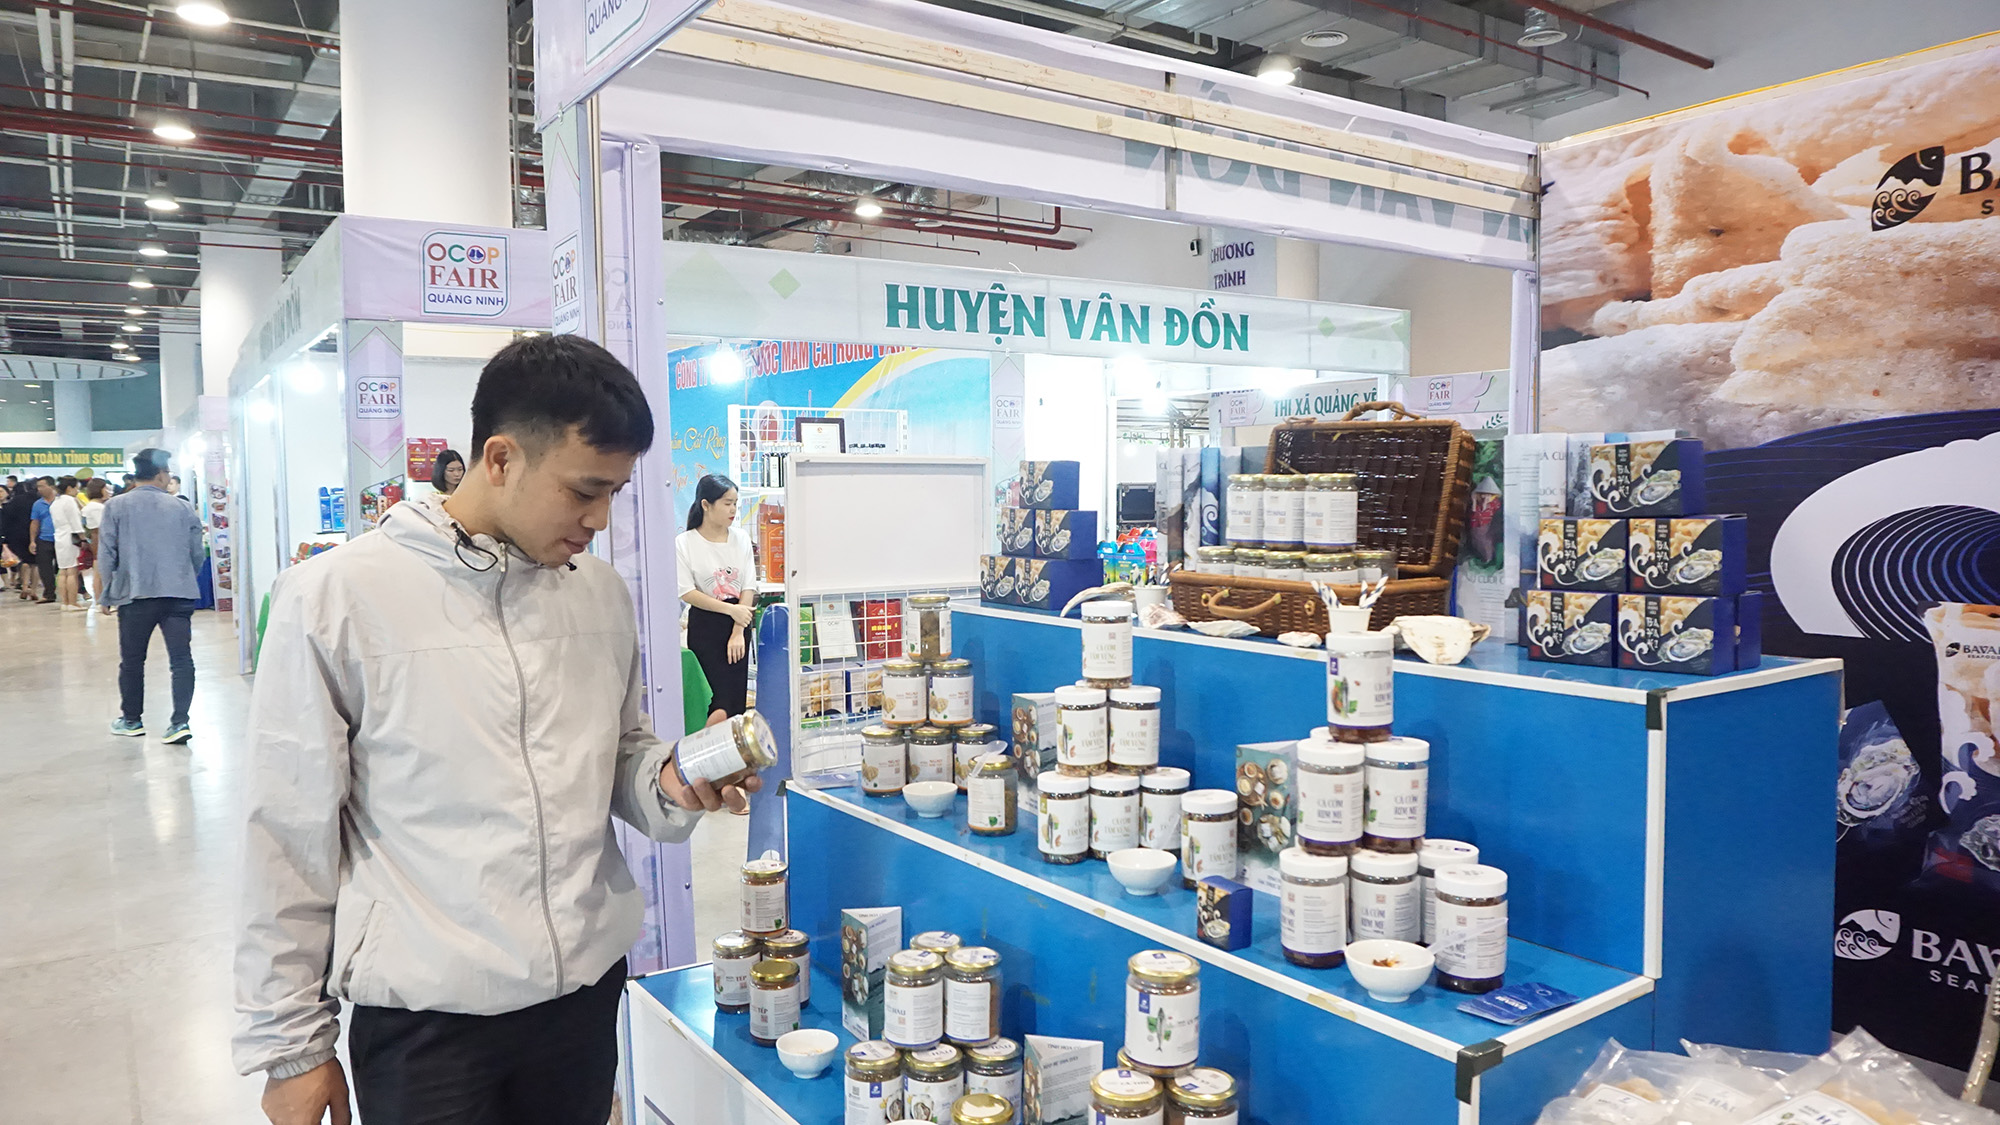 Nhiều sản phẩm OCOP của tỉnh được bày bán tại Hội chợ OCOP Quảng Ninh - 2020 được người dân tin tưởng lựa chọn.